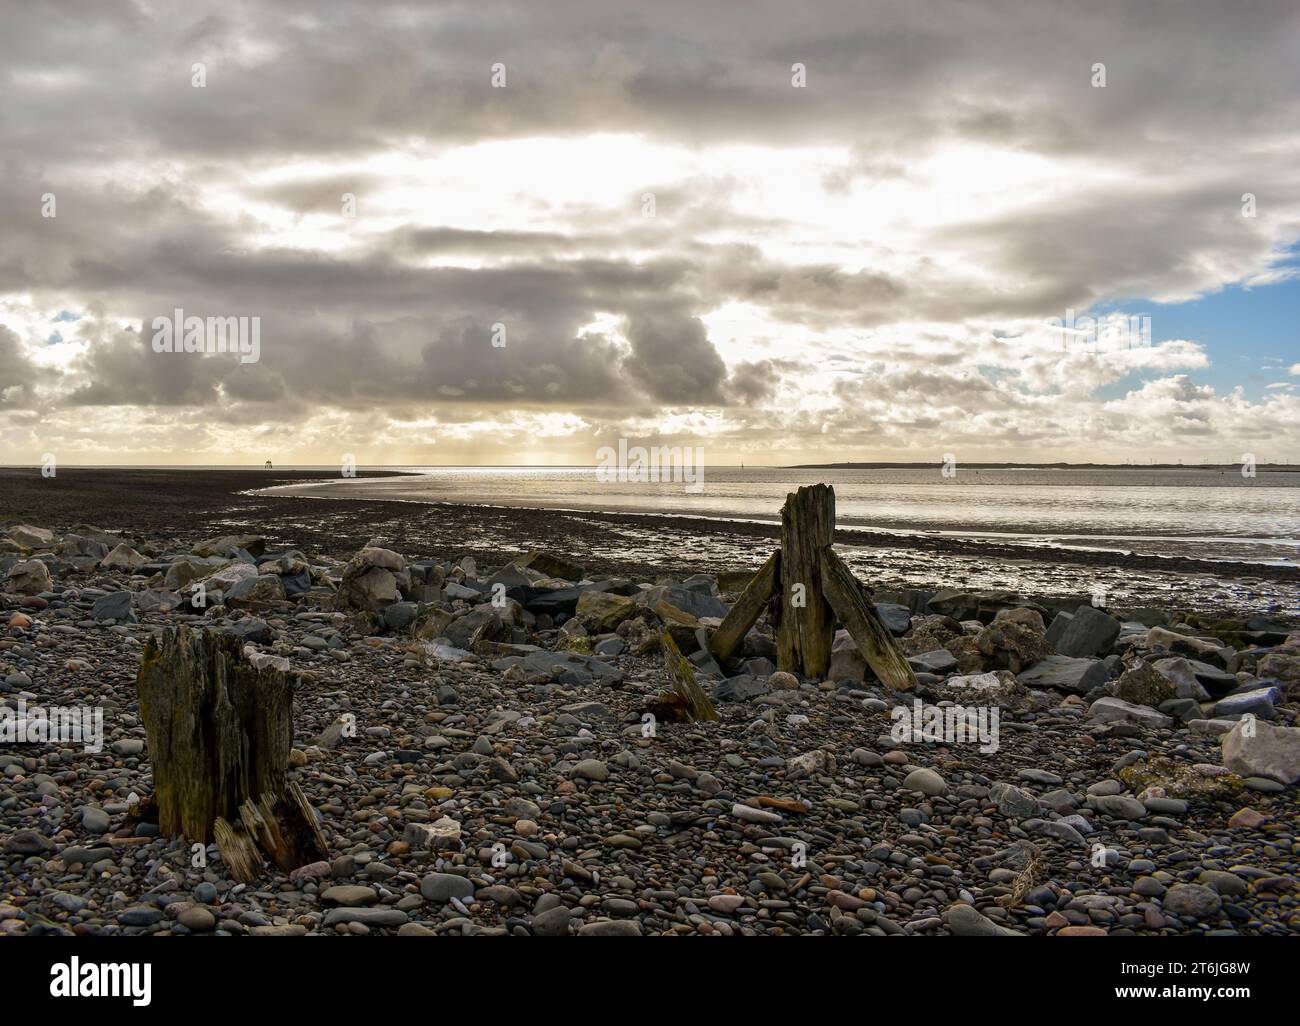 Una spiaggia di rocce sciolte e ciottoli con i resti di una struttura in legno, in lontananza c'è una bassa marea sotto un cielo nuvoloso ma luminoso. Foto Stock